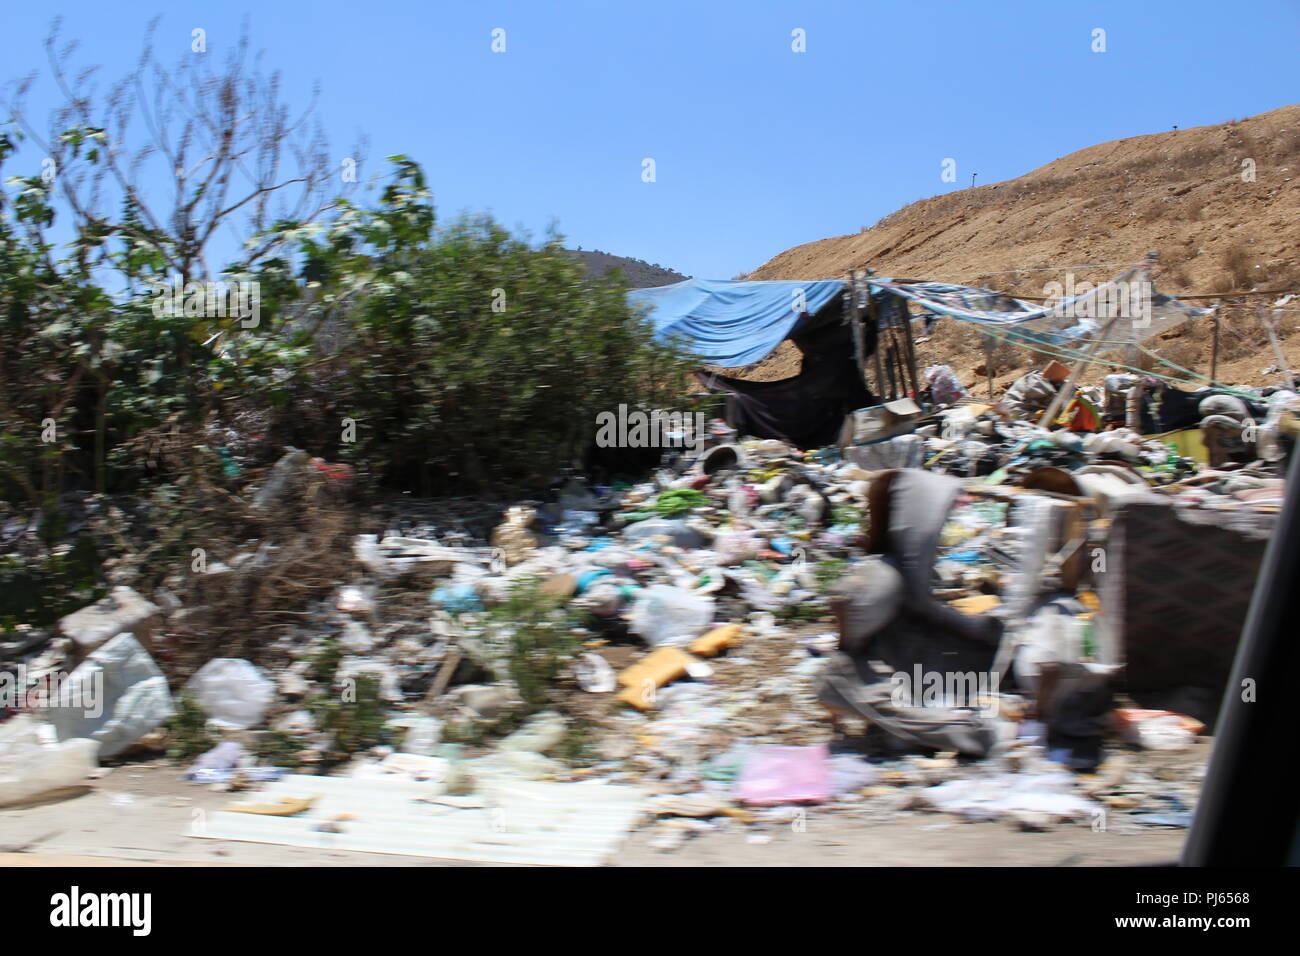 Montañas de basura y Contaminación de la tierra. Mountains of garbage and pollution of the earth. Stock Photo